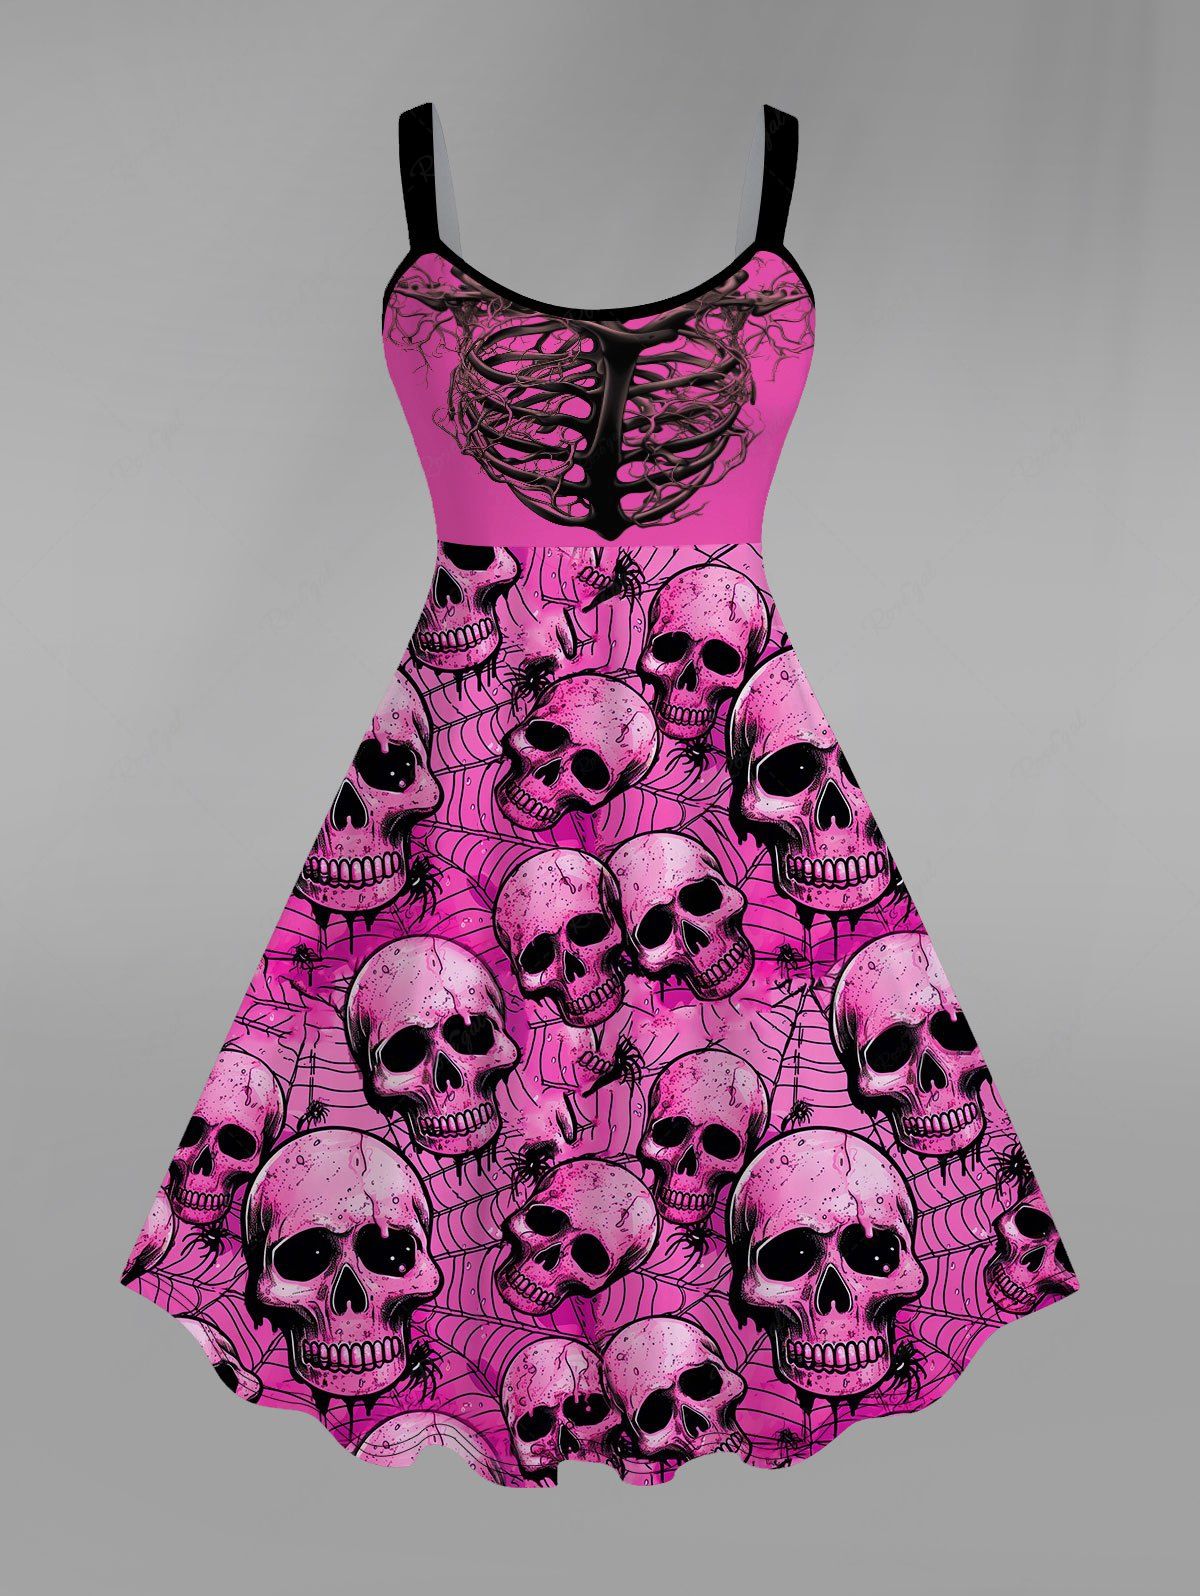 💗Tabbytragedy Loves💗 Gothic Valentine's Day Skulls Skeleton Spider Web Print Tank Dress